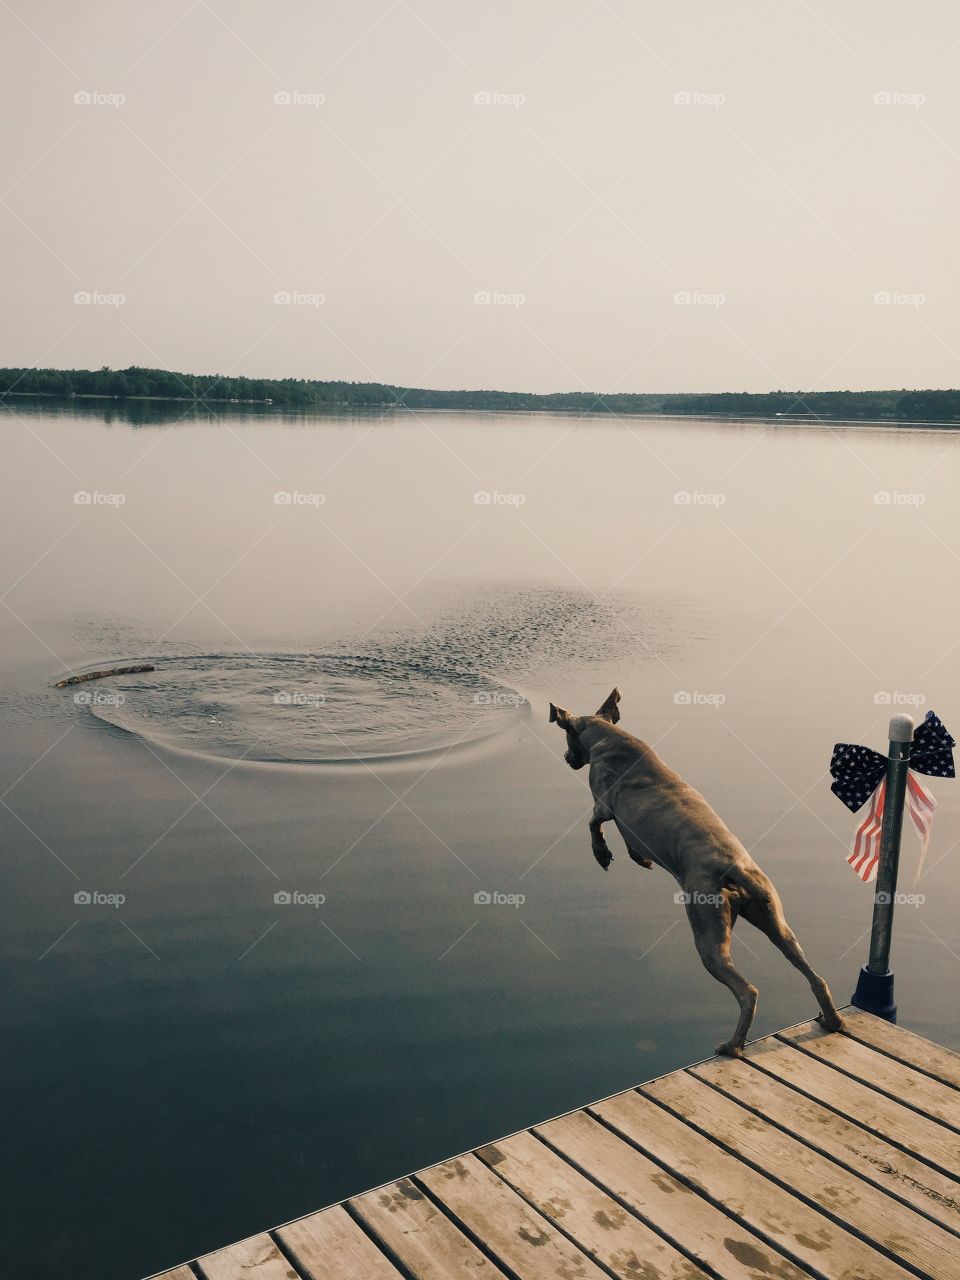 Dog jumping in lake